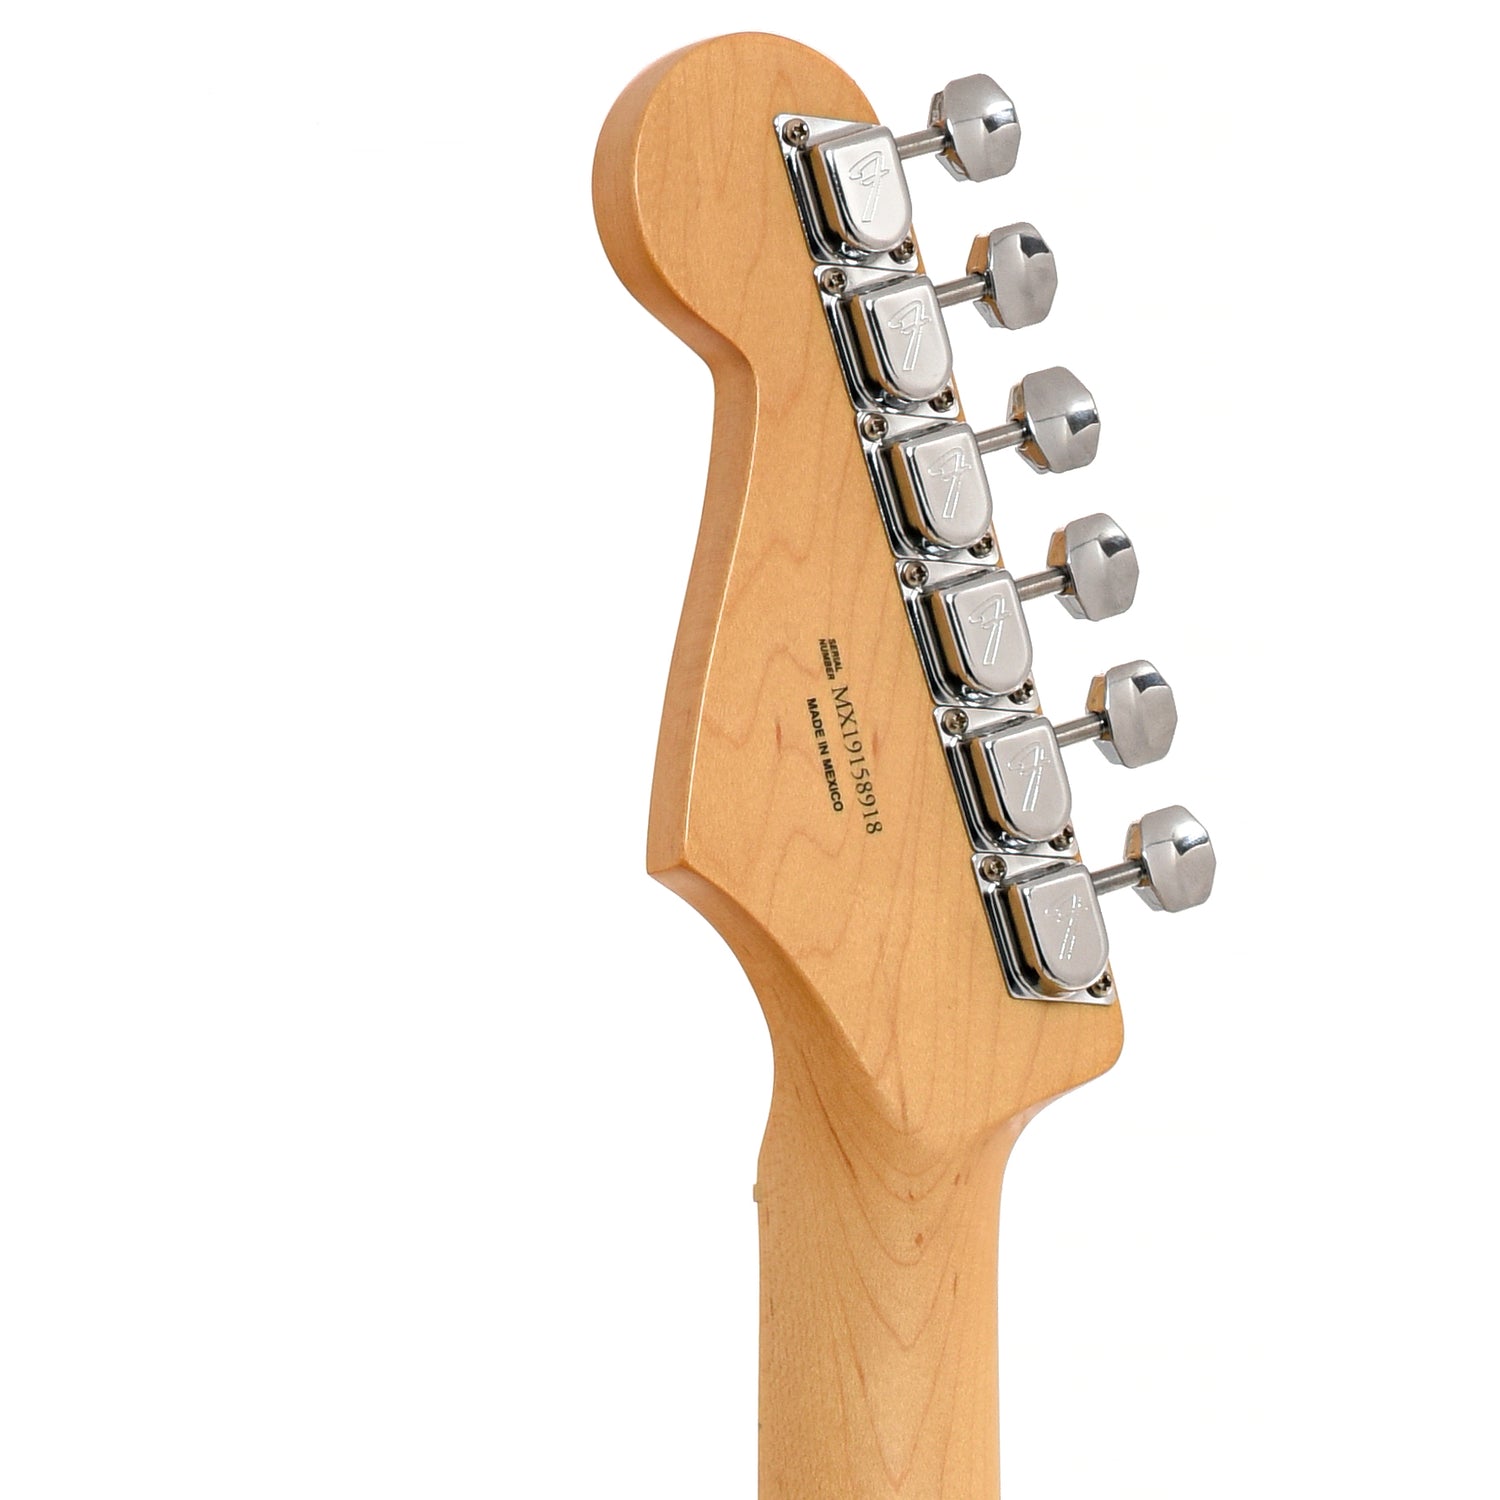 Back headstock of Fender Lead II